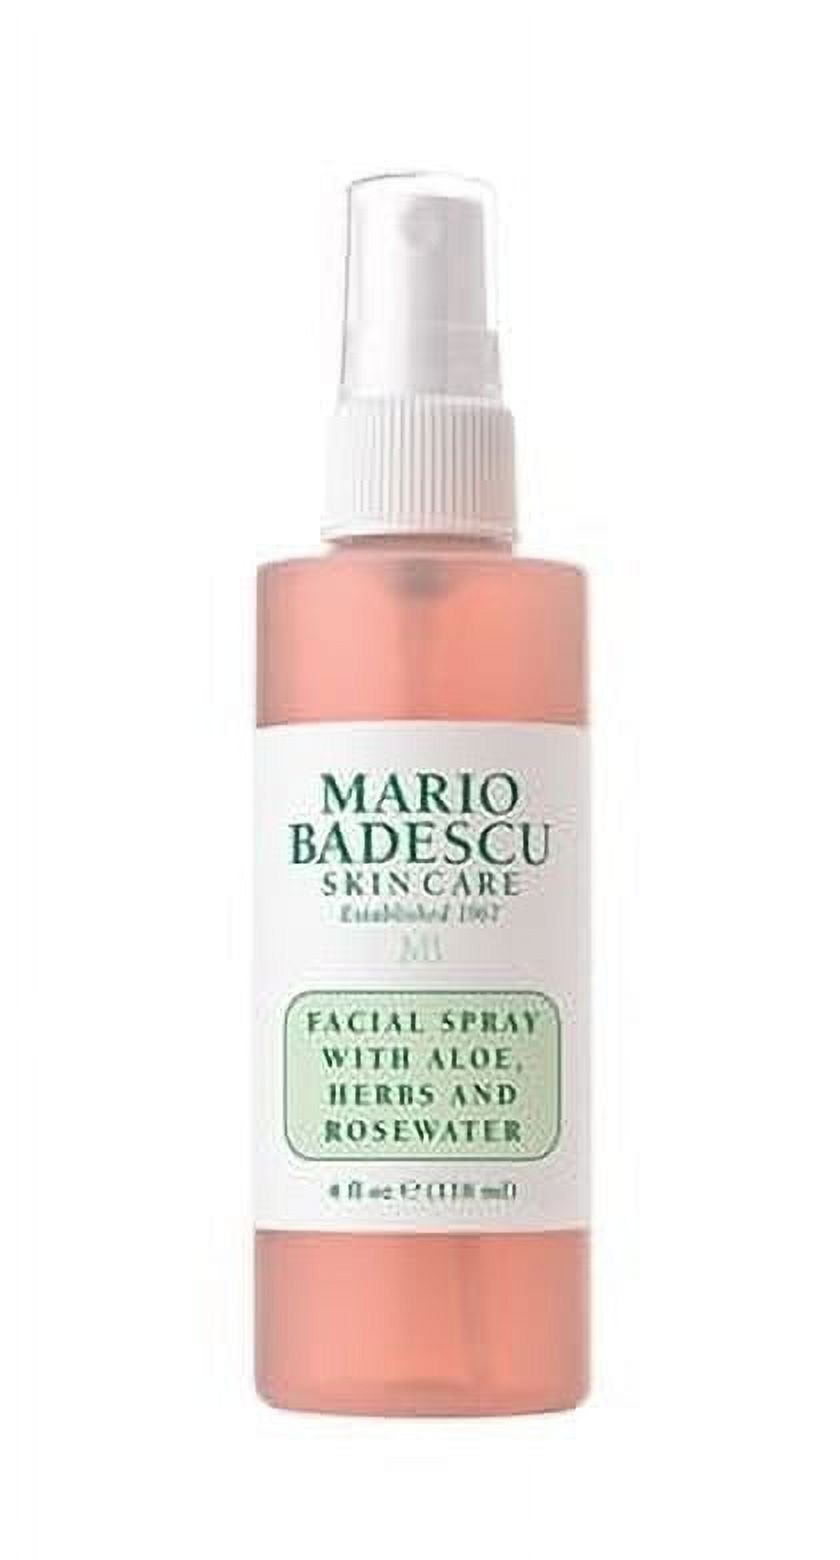 Mario Badescu Facial Spray Aloe Herbs and Rosewater, 8 fl oz - image 1 of 8